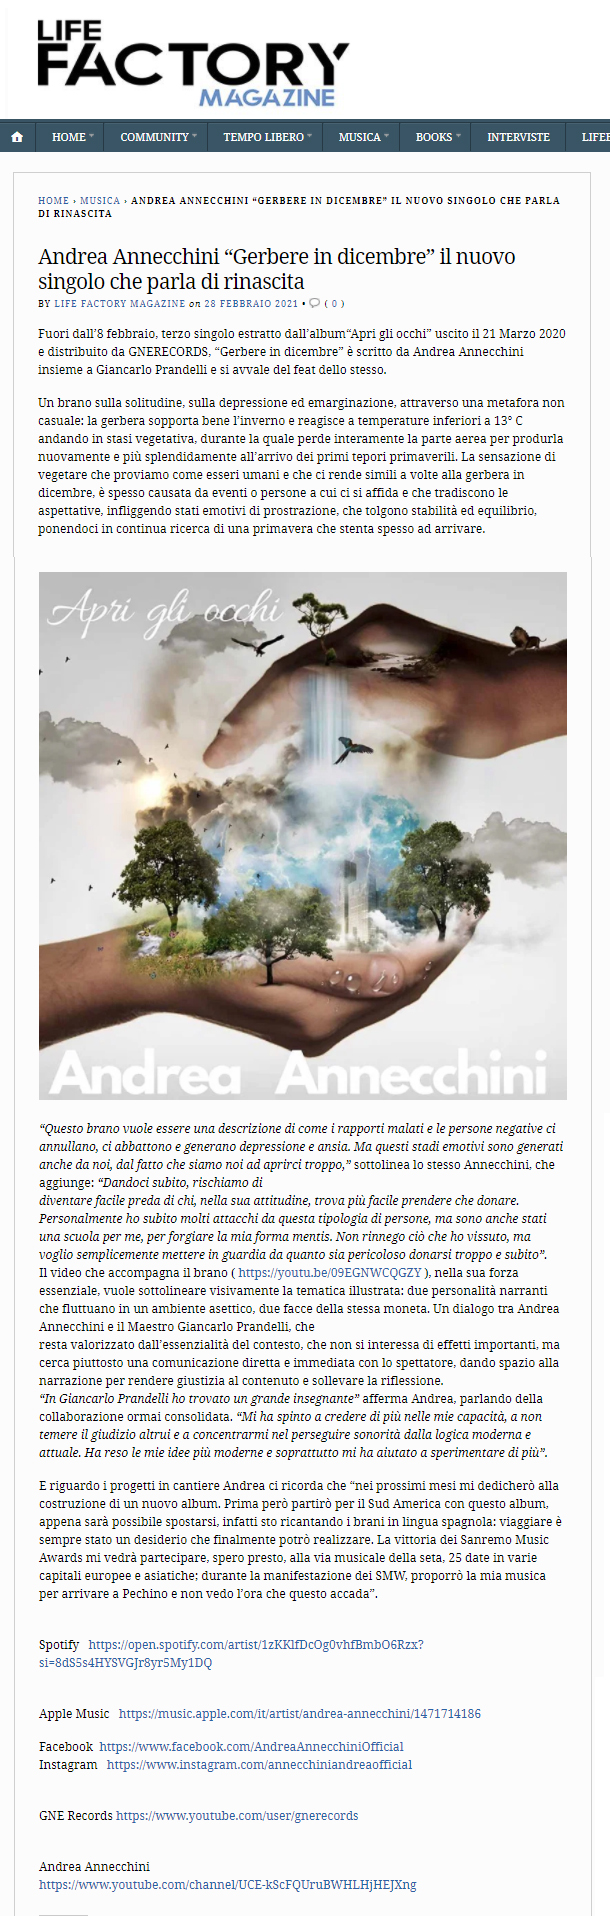 Andrea Annecchini su LifeFactory Magazine (28-02-2021)